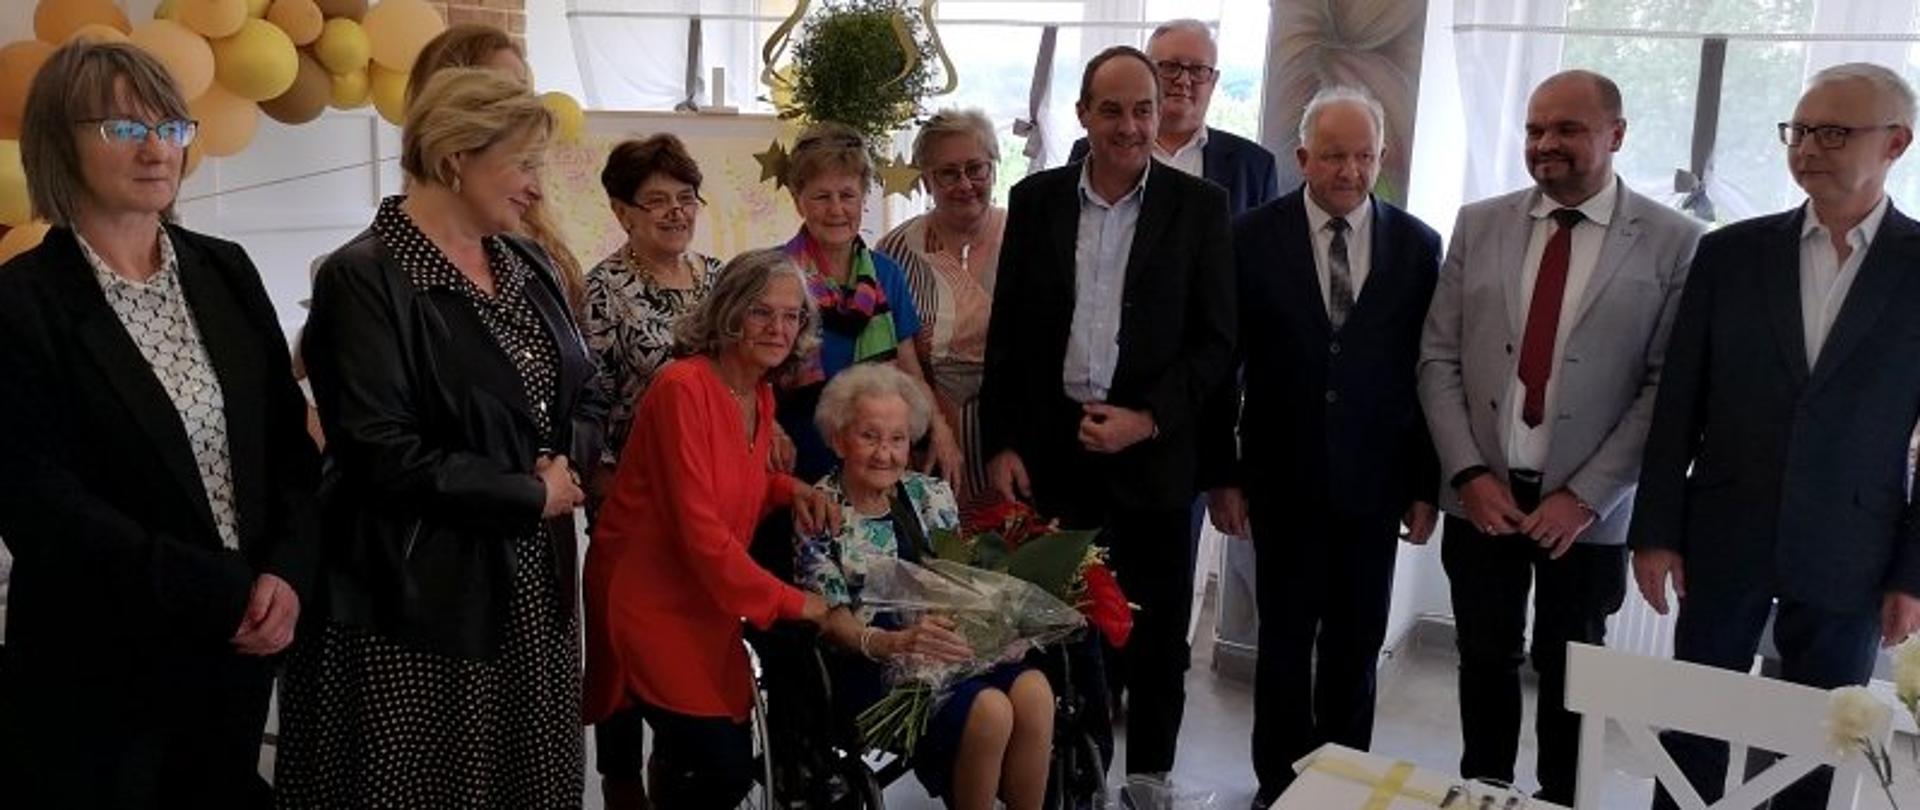 100 lat pani Ludwiki, zdjęcie grupowe w centralnym miejscu pani Ludwika - 100 latka w otoczeniu córki, wnuka i gości. 